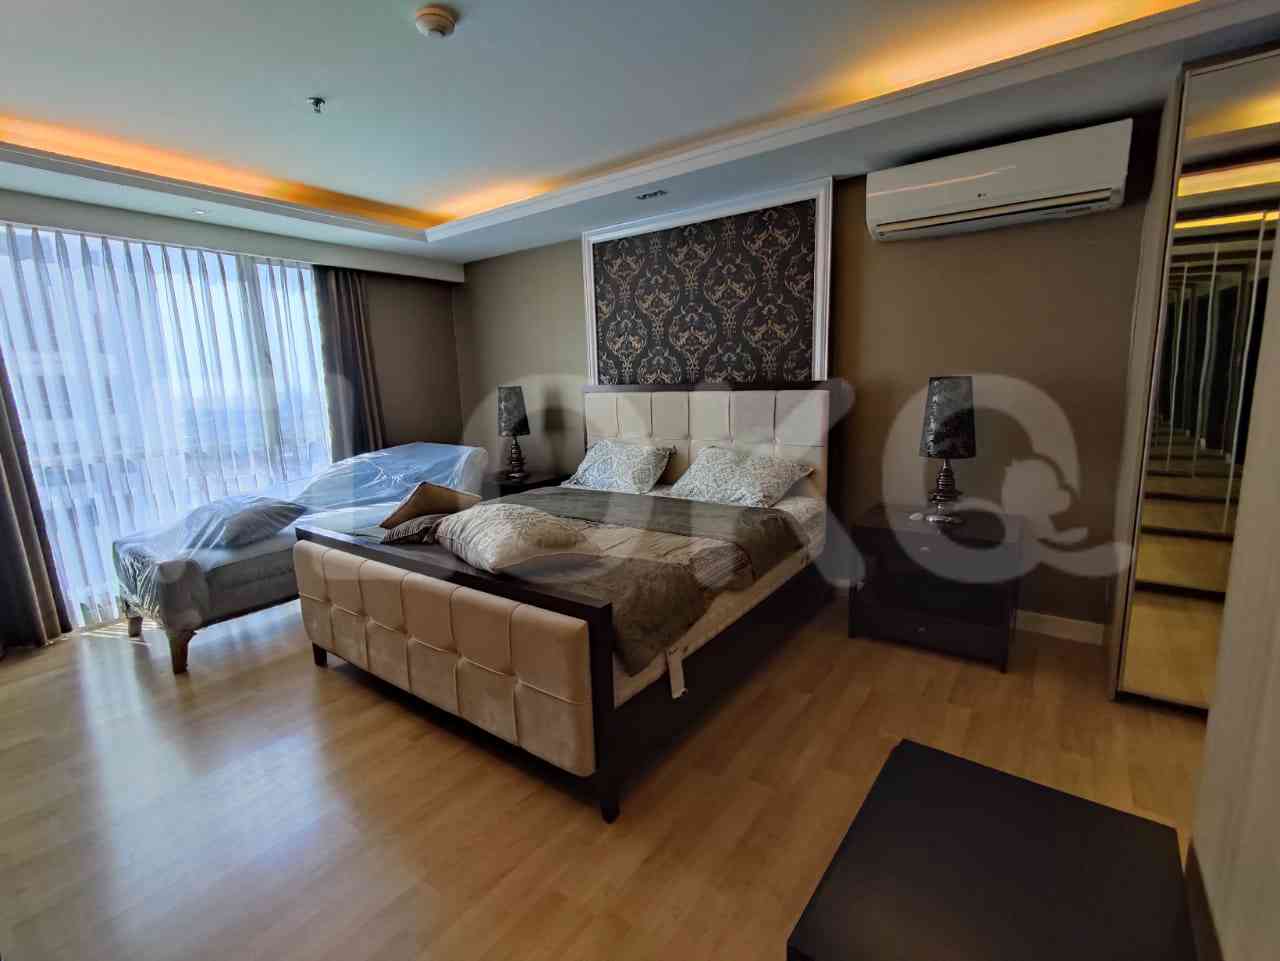 4 Bedroom on 21st Floor for Rent in Casa Grande - ftee1f 5